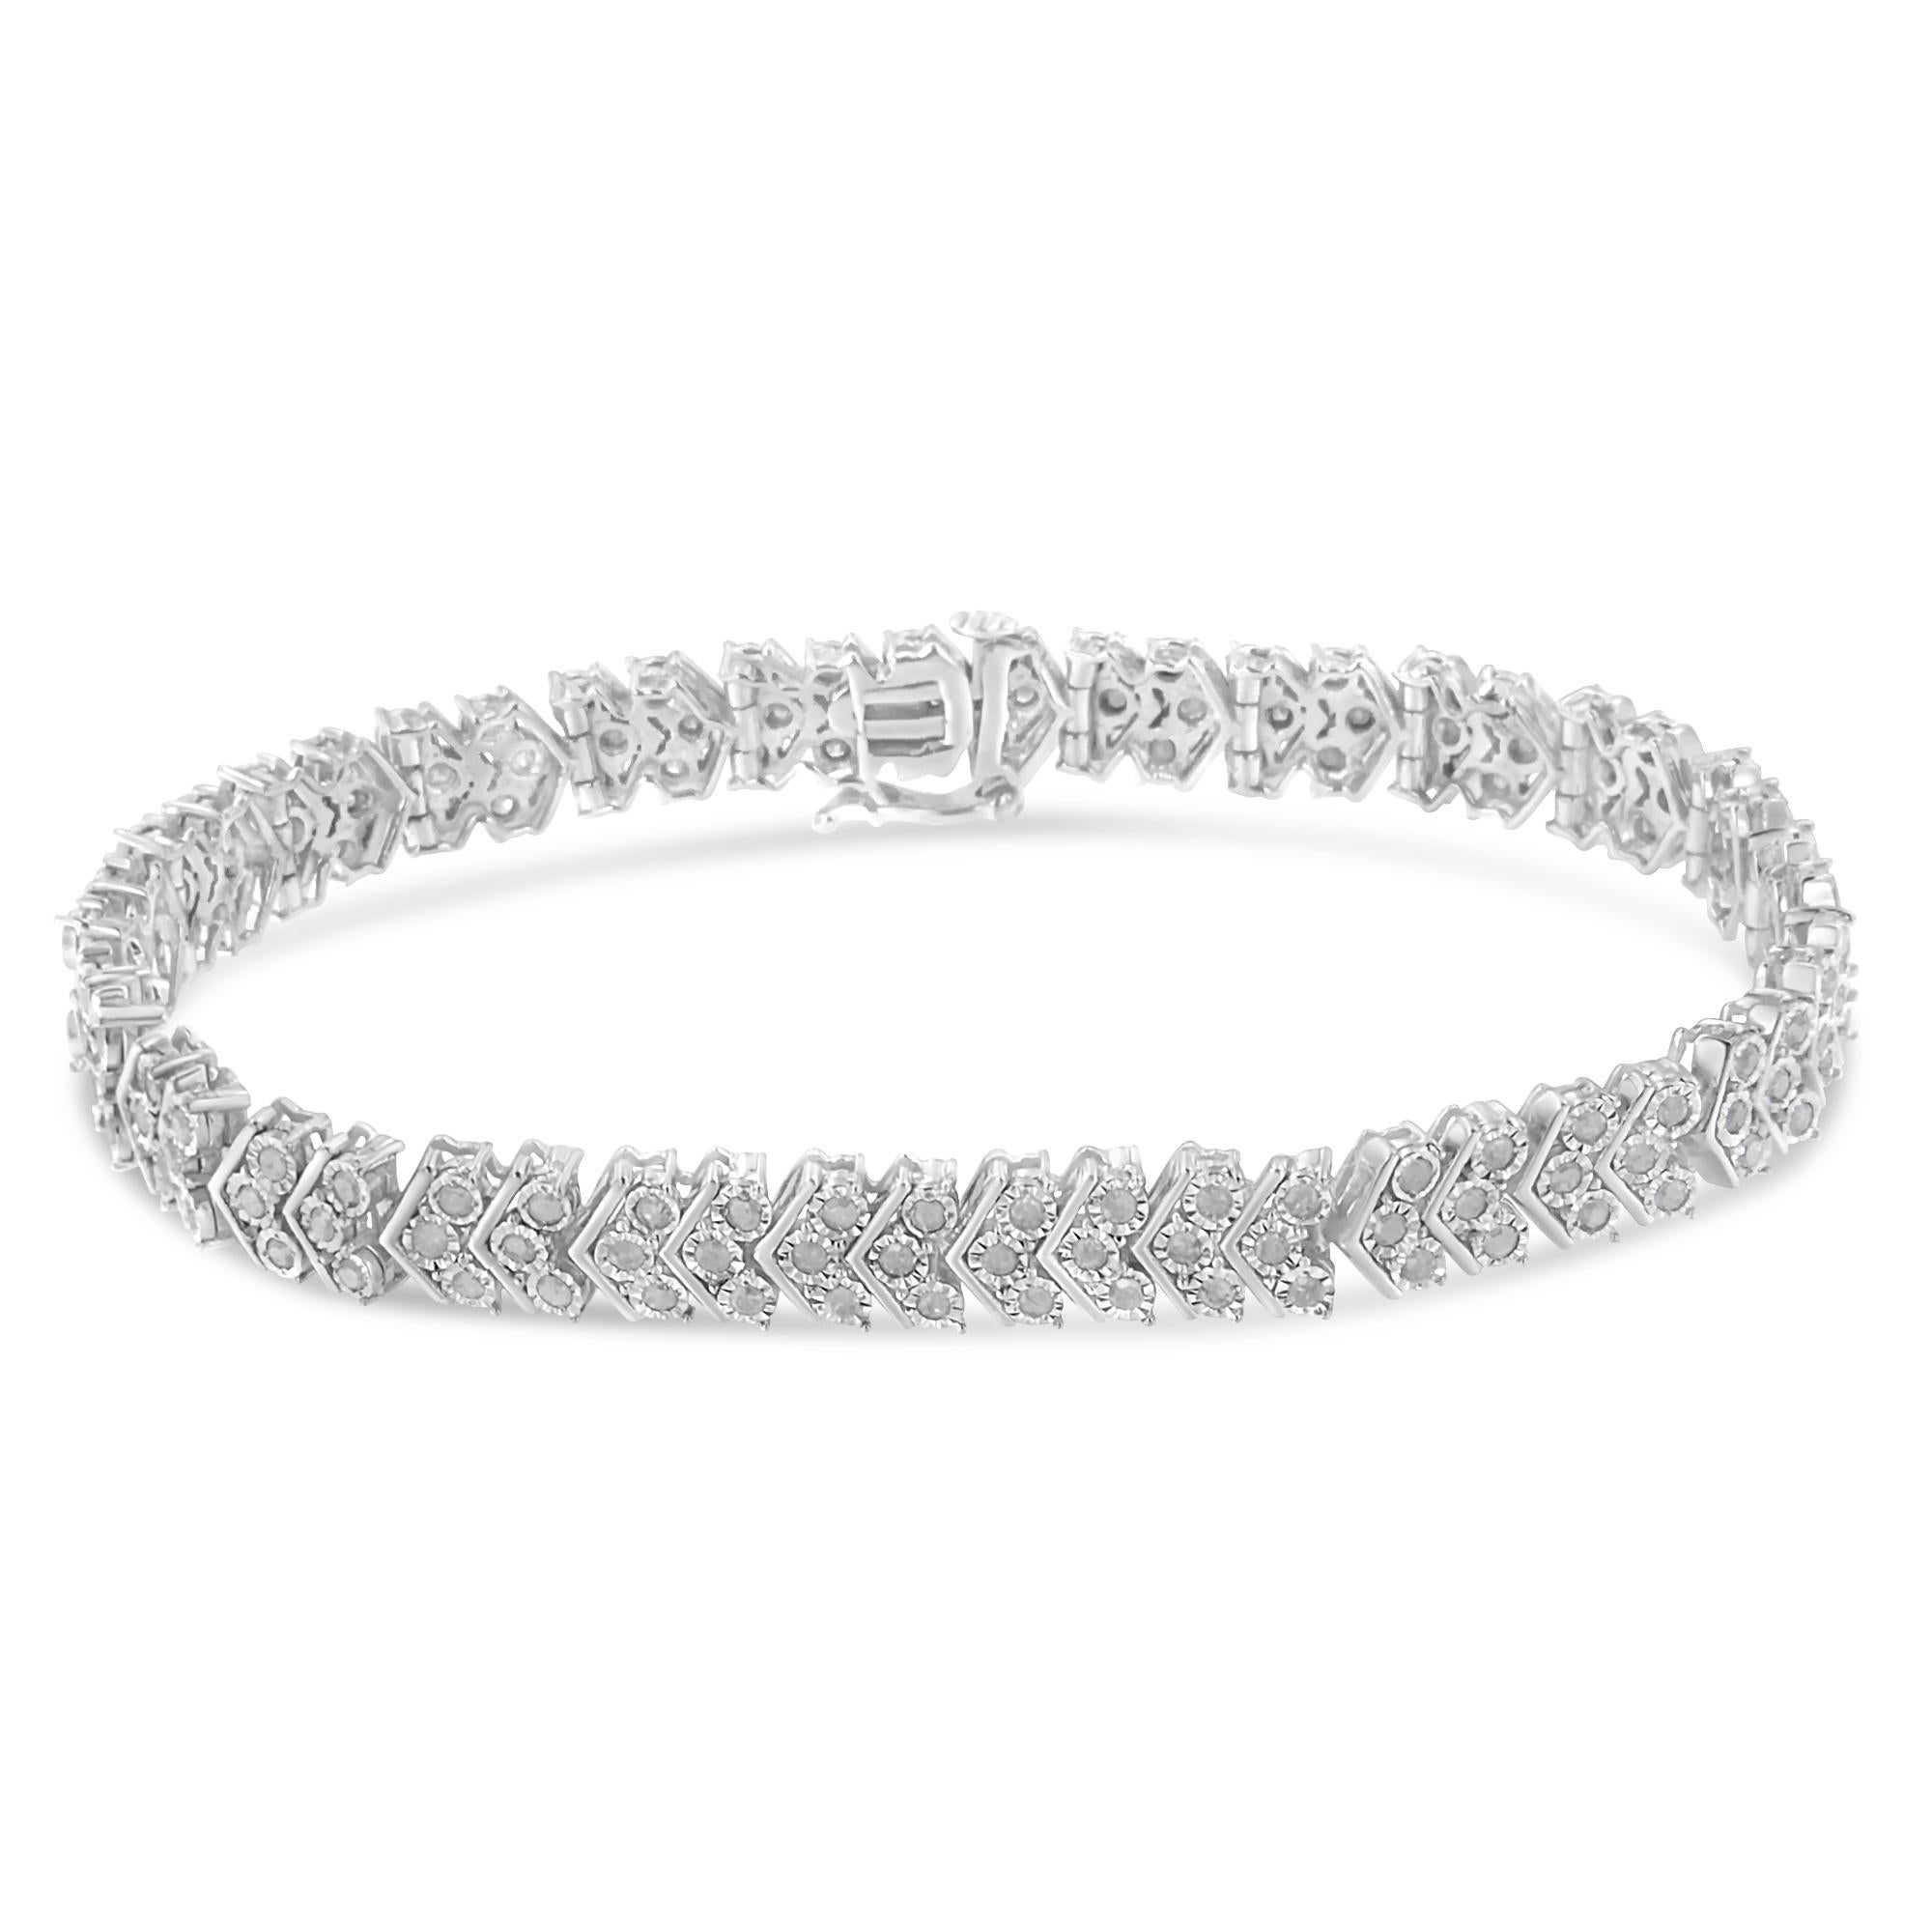 Ce superbe bracelet en argent sterling met en valeur cent cinquante diamants roses étincelants de qualité promo. Les 2 1/6ct TDW de diamants incrustent le bracelet dans un motif à chevrons caractéristique. Le bracelet est fixé par un fermoir en